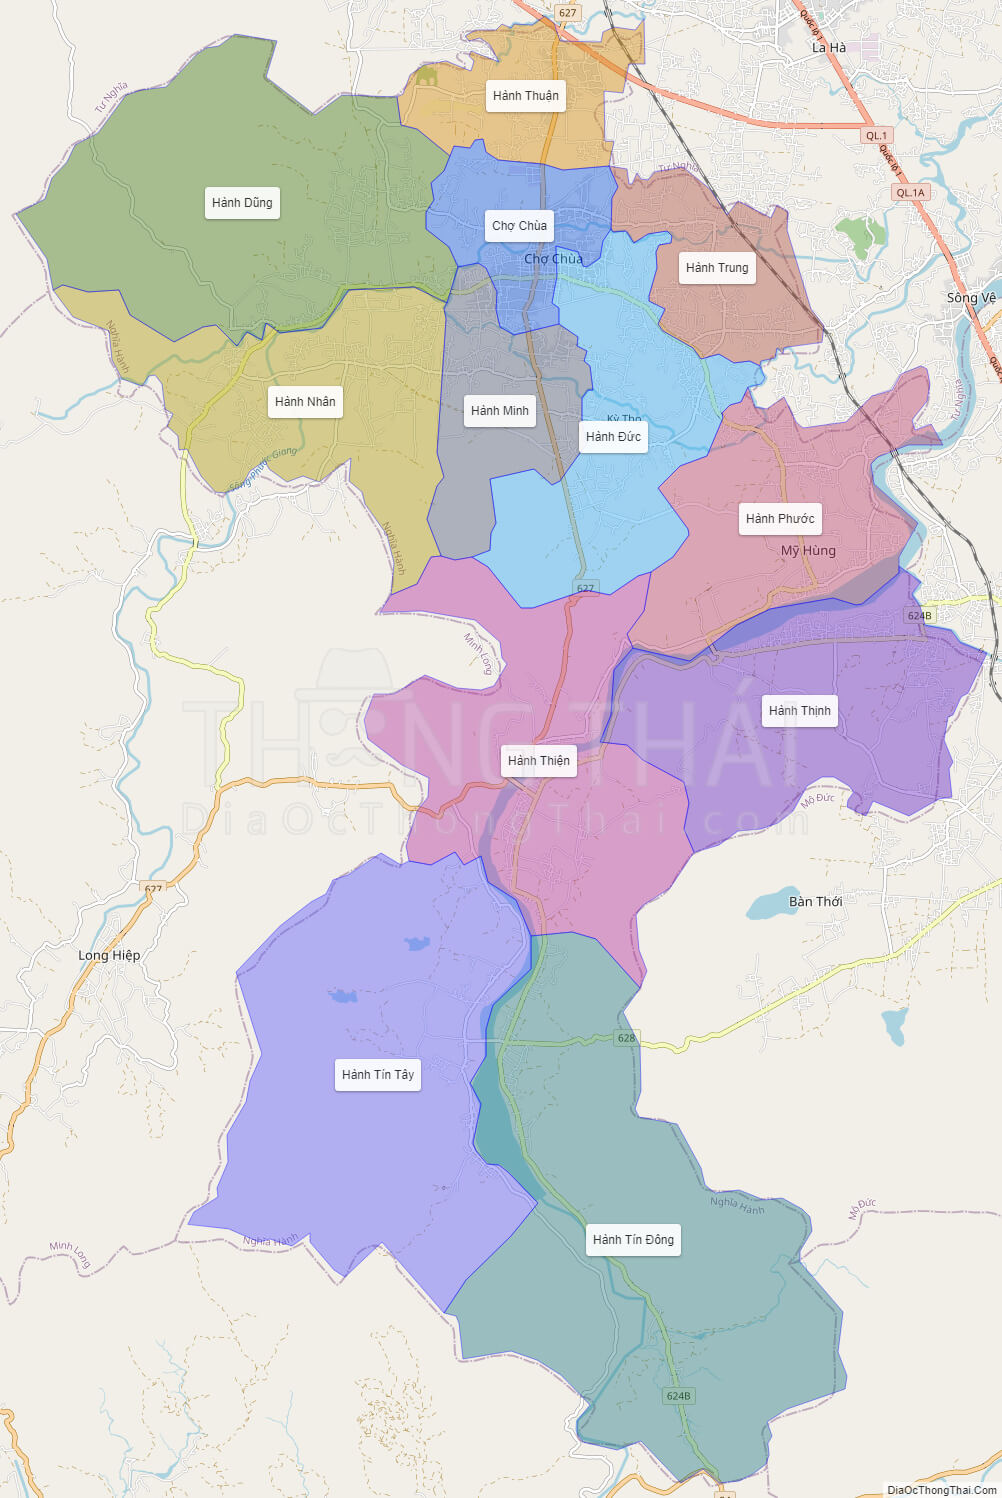 Bản đồ huyện Nghĩa Hành: Huyện Nghĩa Hành đang được quy hoạch mạnh mẽ để phát triển bền vững. Xem bản đồ mới nhất để biết thêm về các địa danh nổi tiếng, các tuyến giao thông, địa điểm du lịch và cơ sở hạ tầng của huyện.